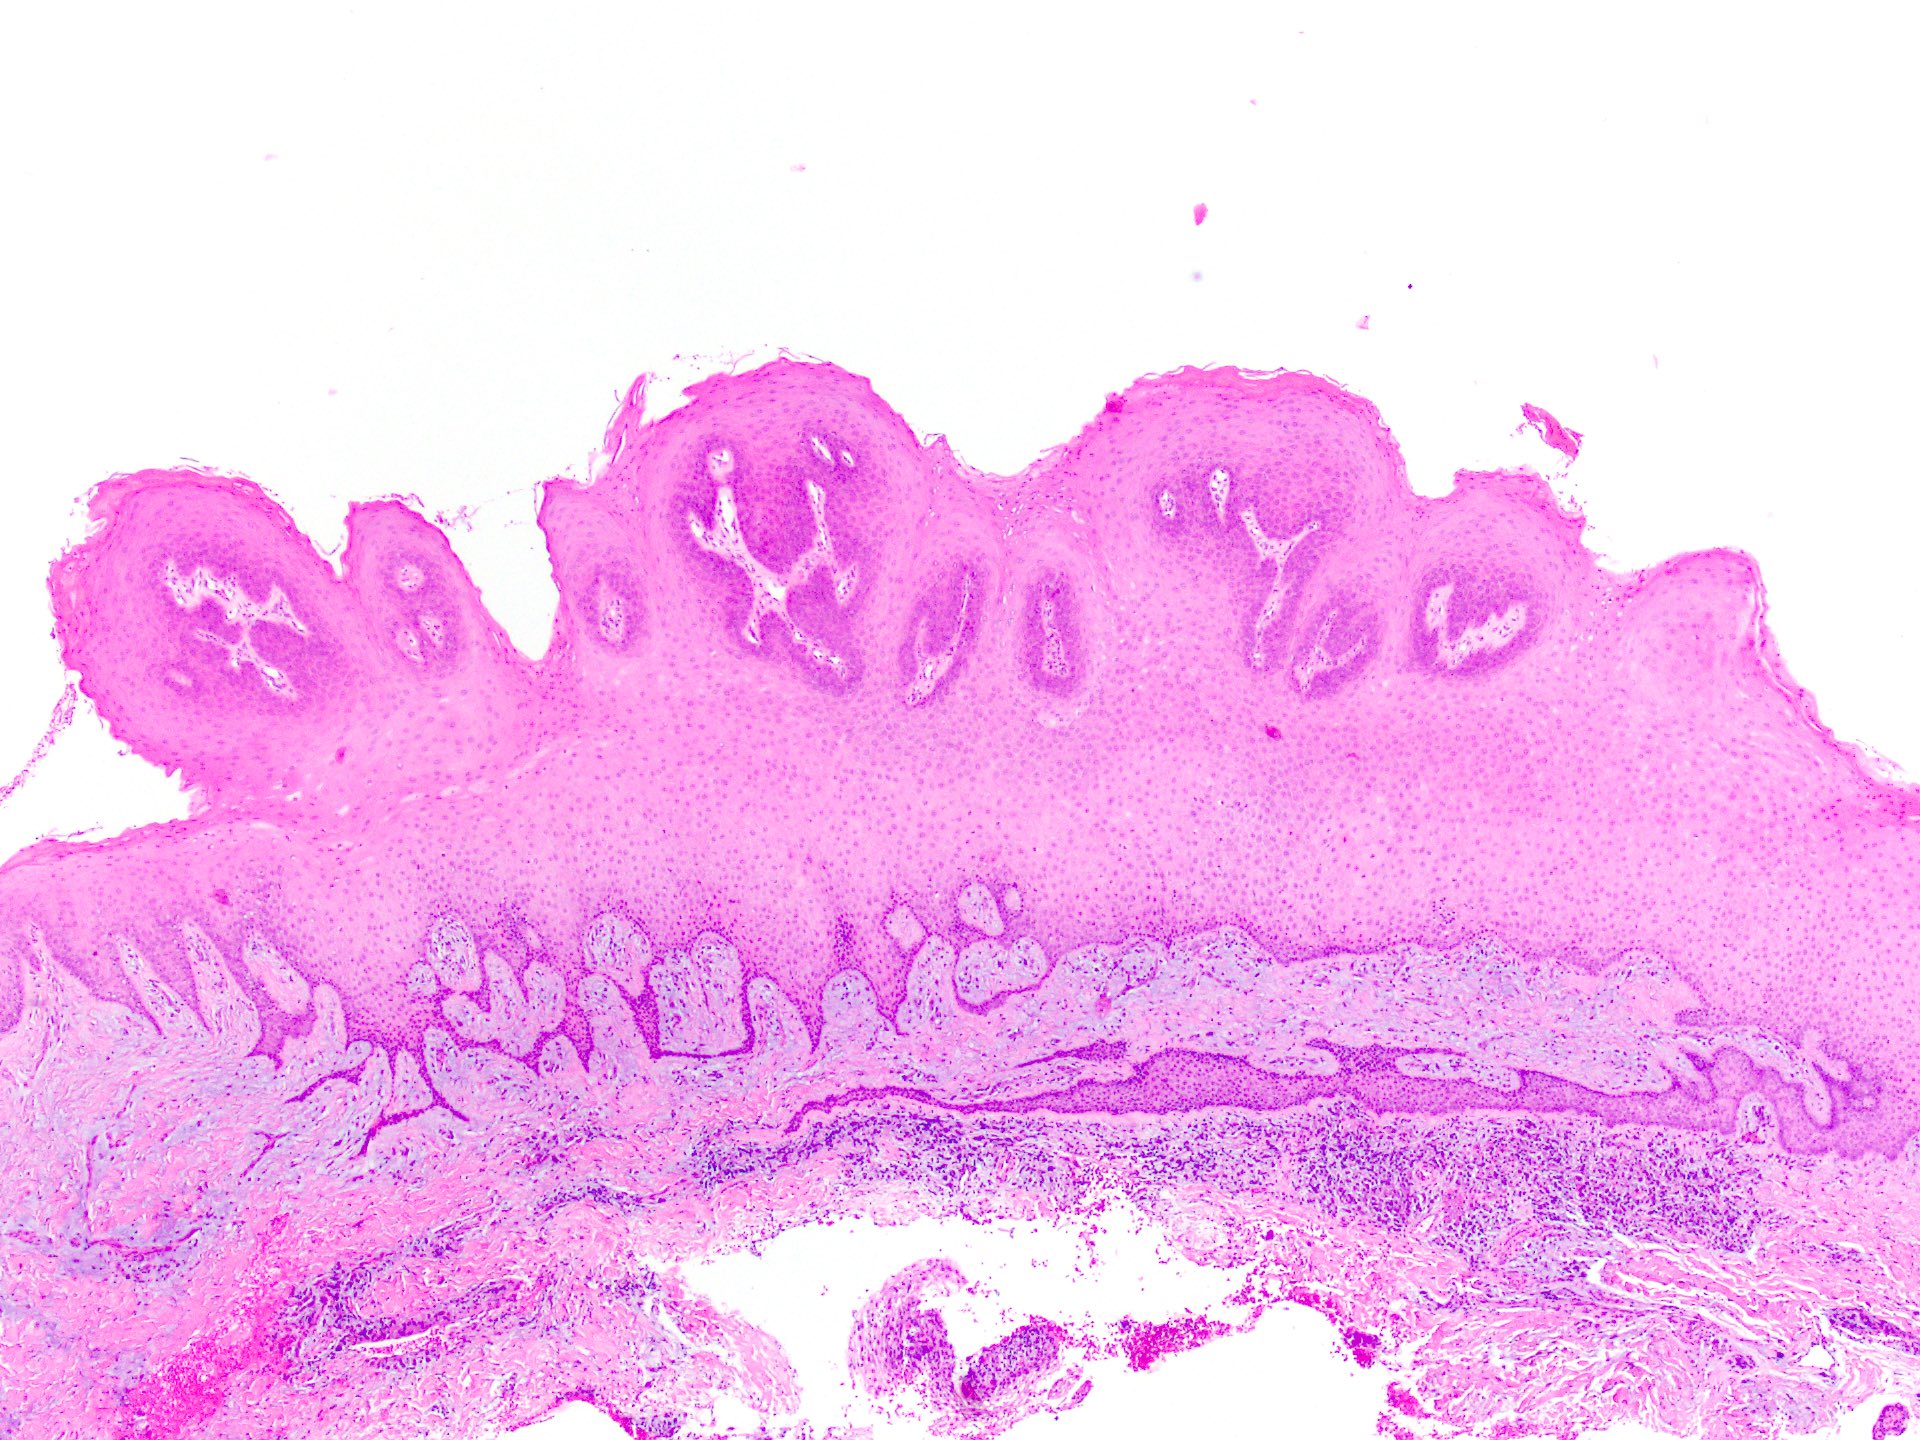 squamous papilloma uvula pathology outlines)